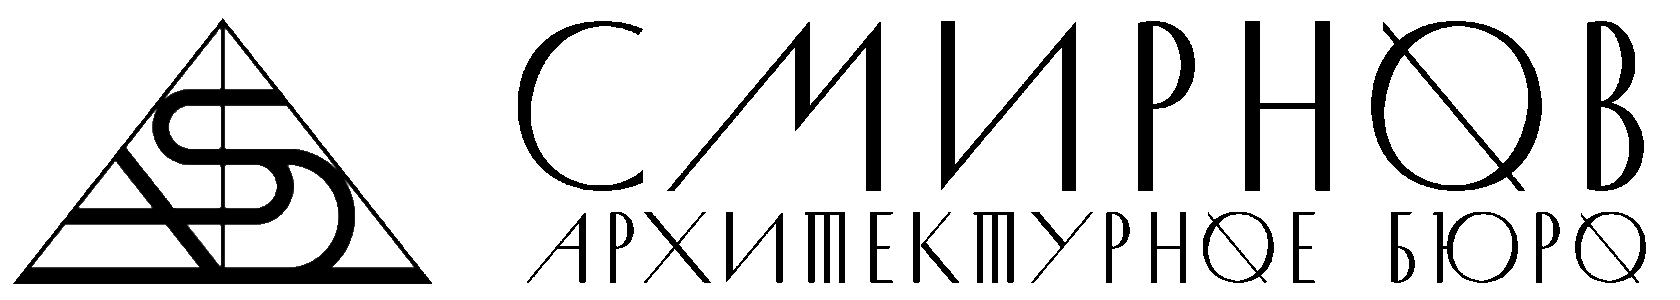 SMIRNOV Architects